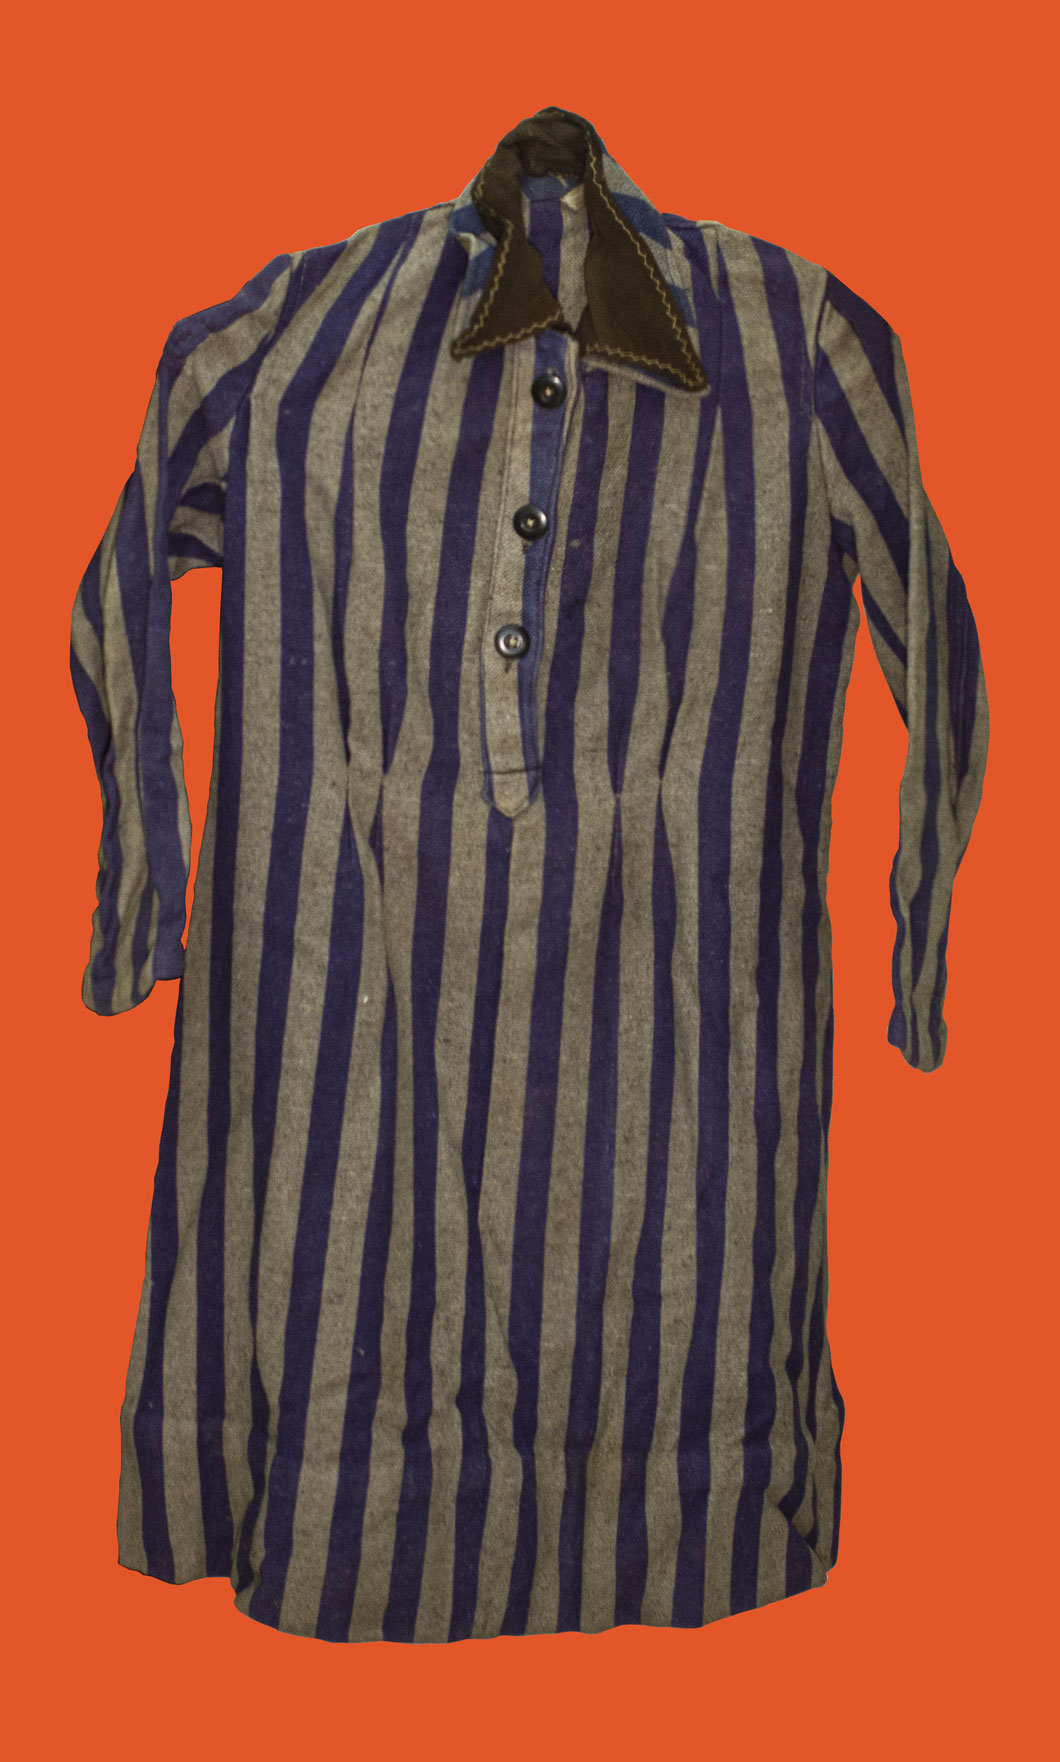 Female concentration camp uniform